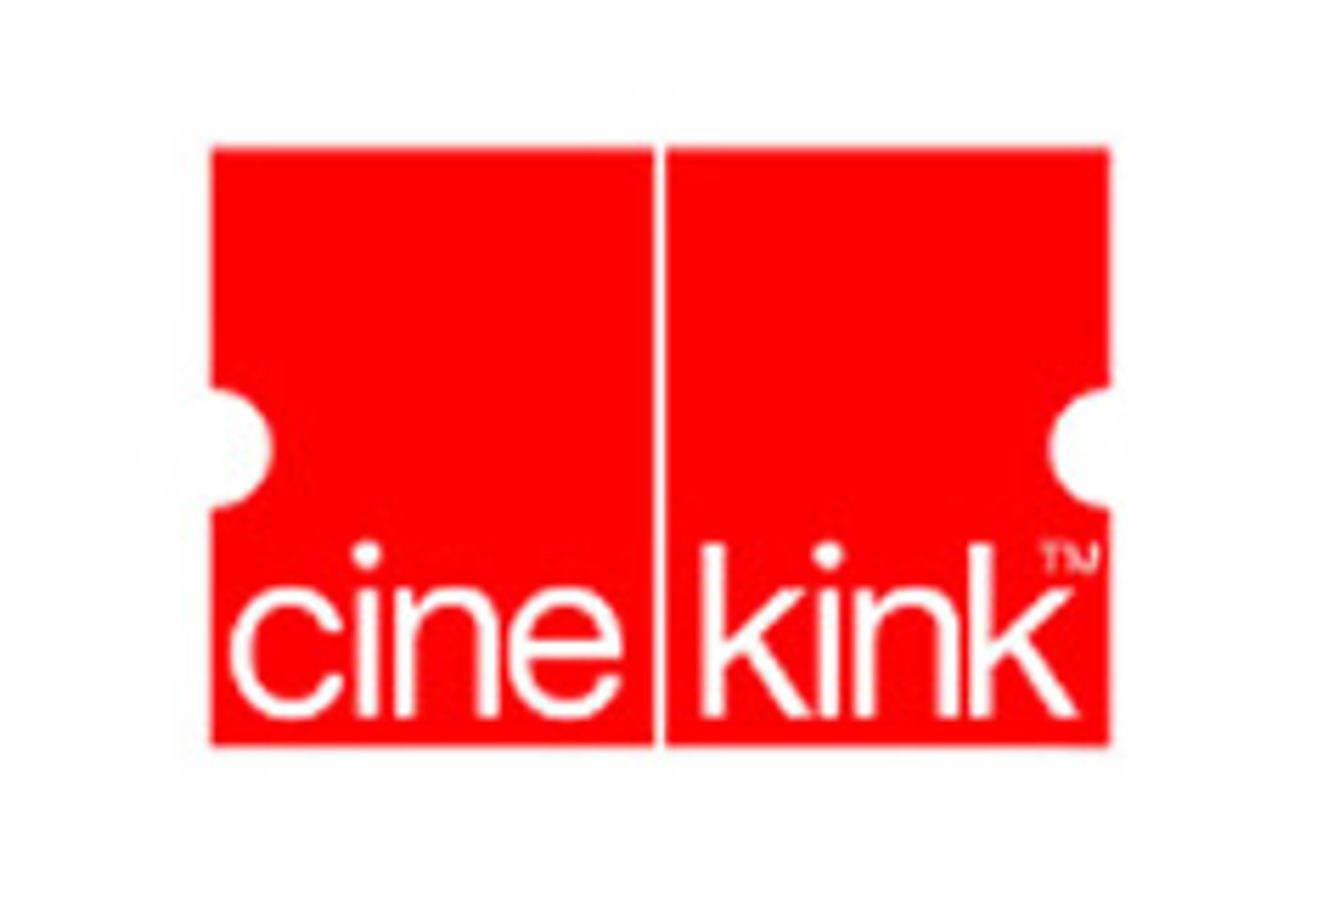 CineKink